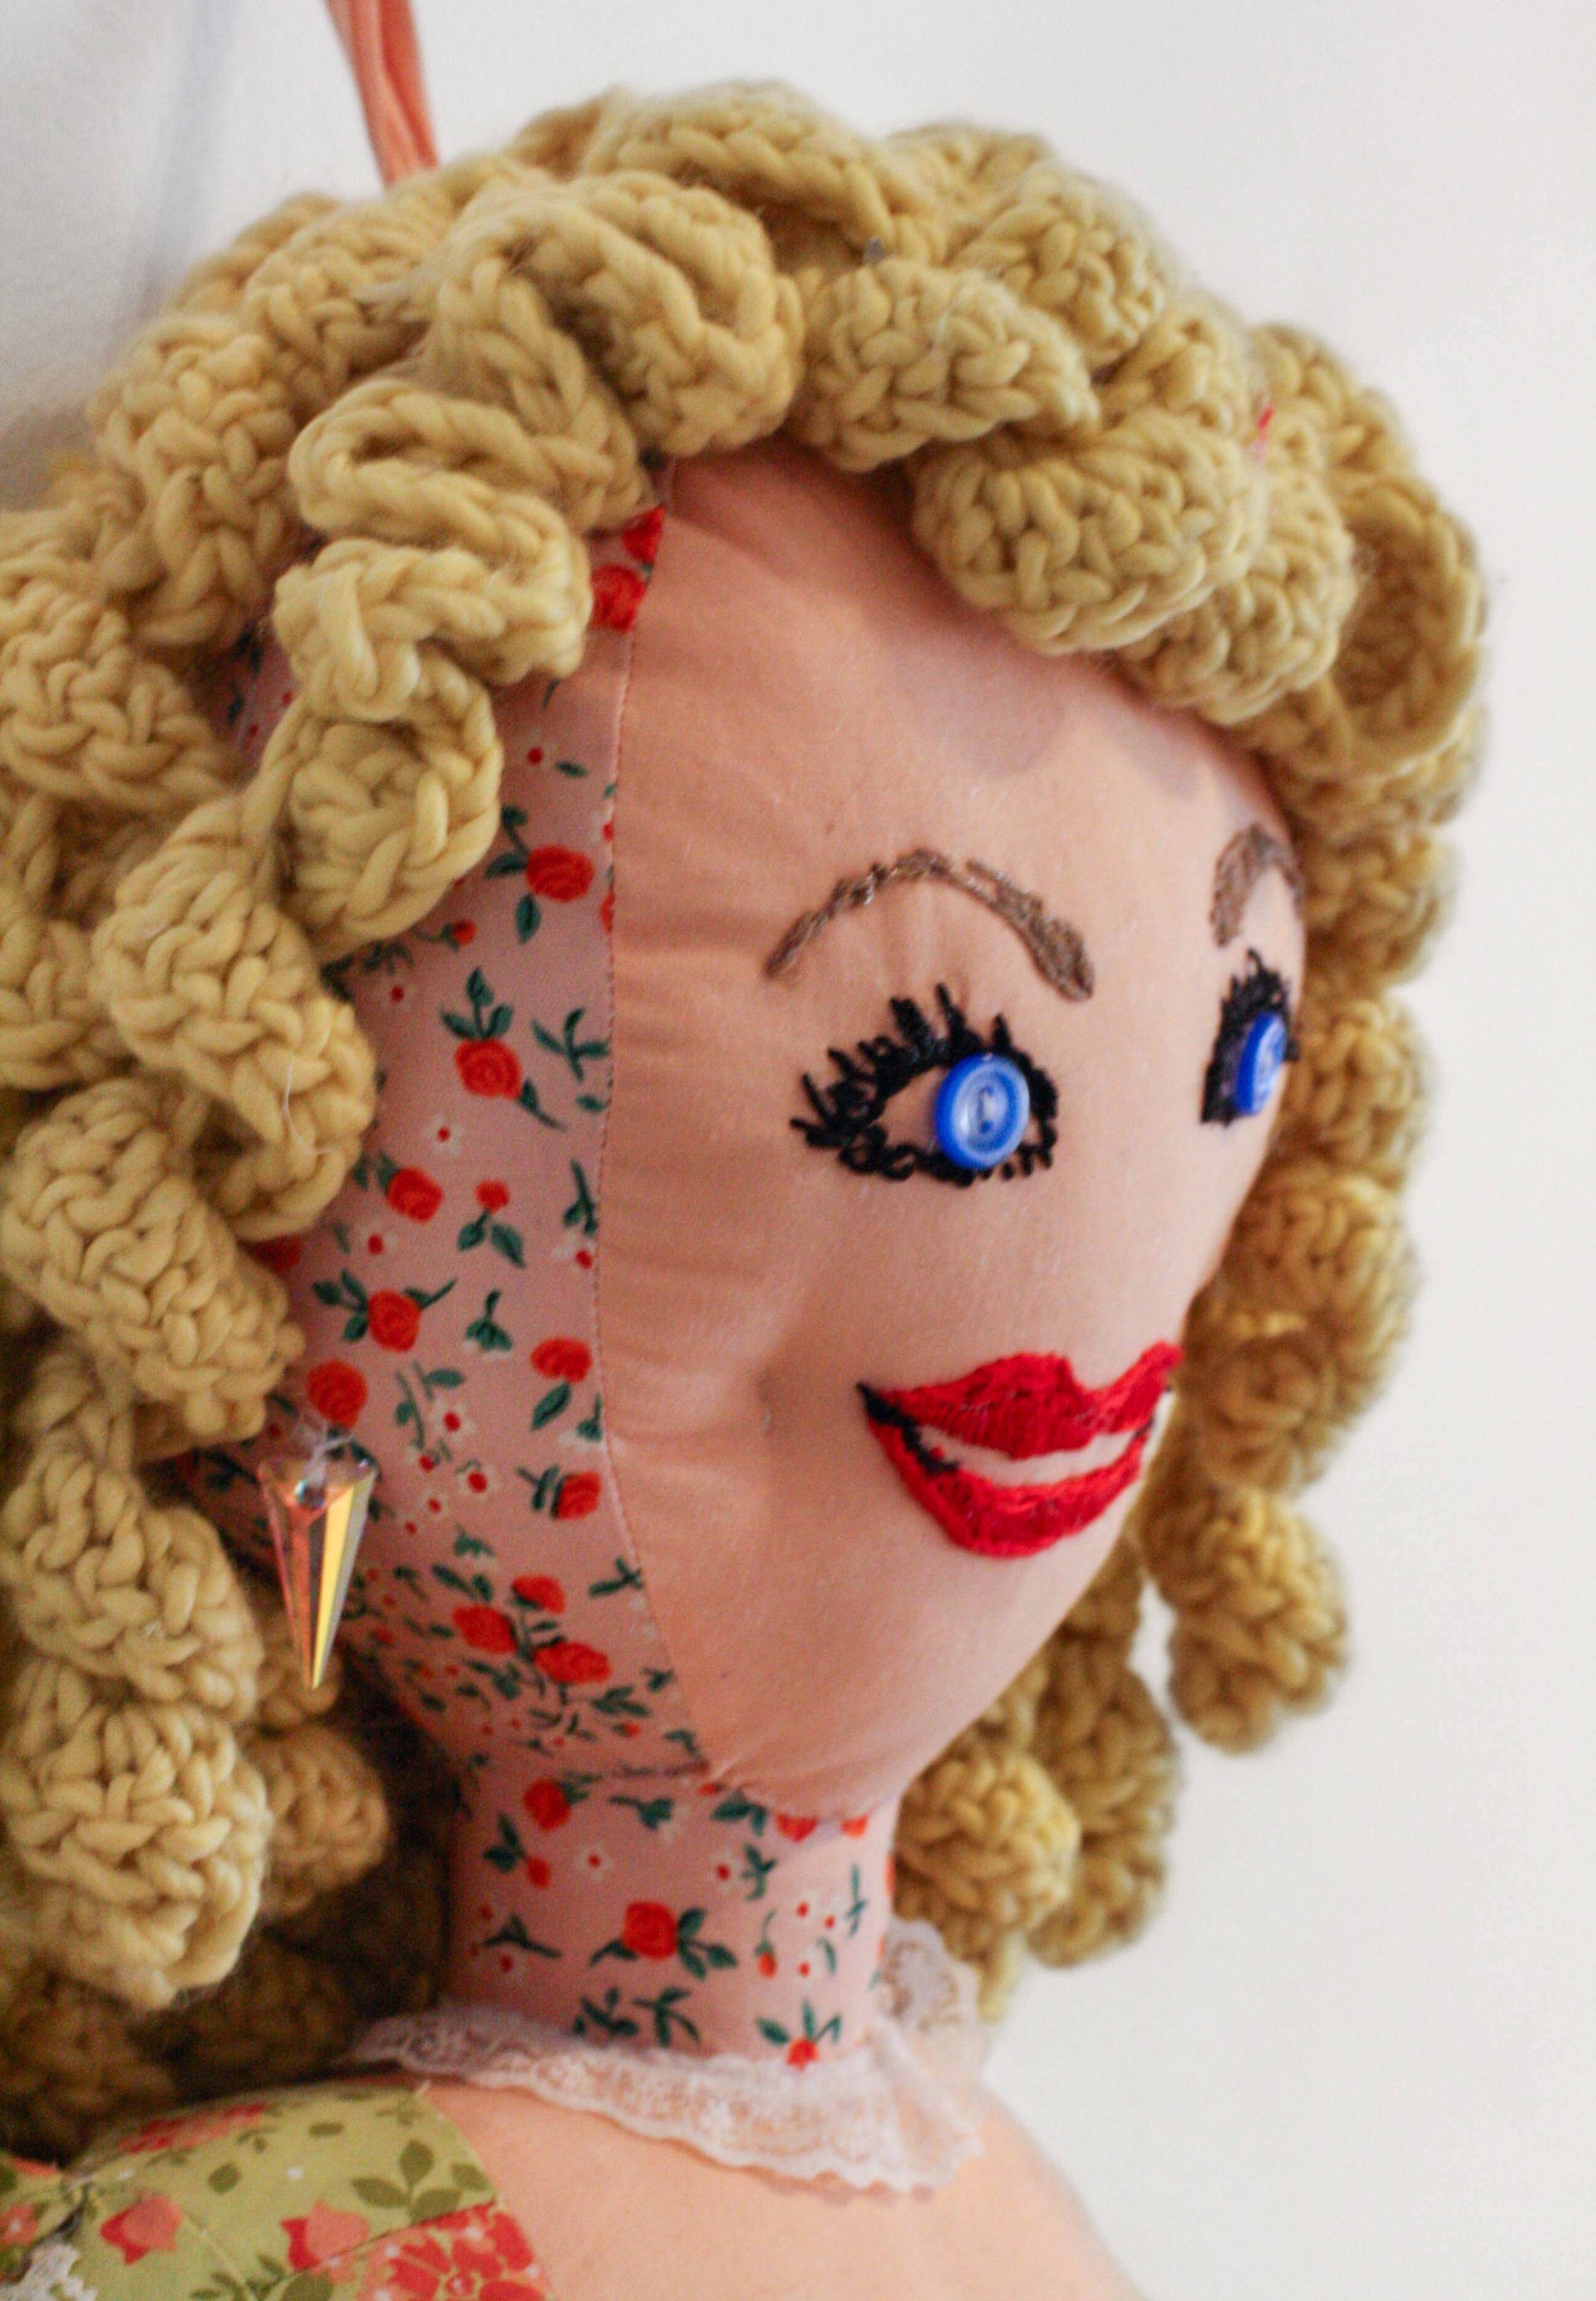 Appalachian Dolly Doll by Lauren Gregory